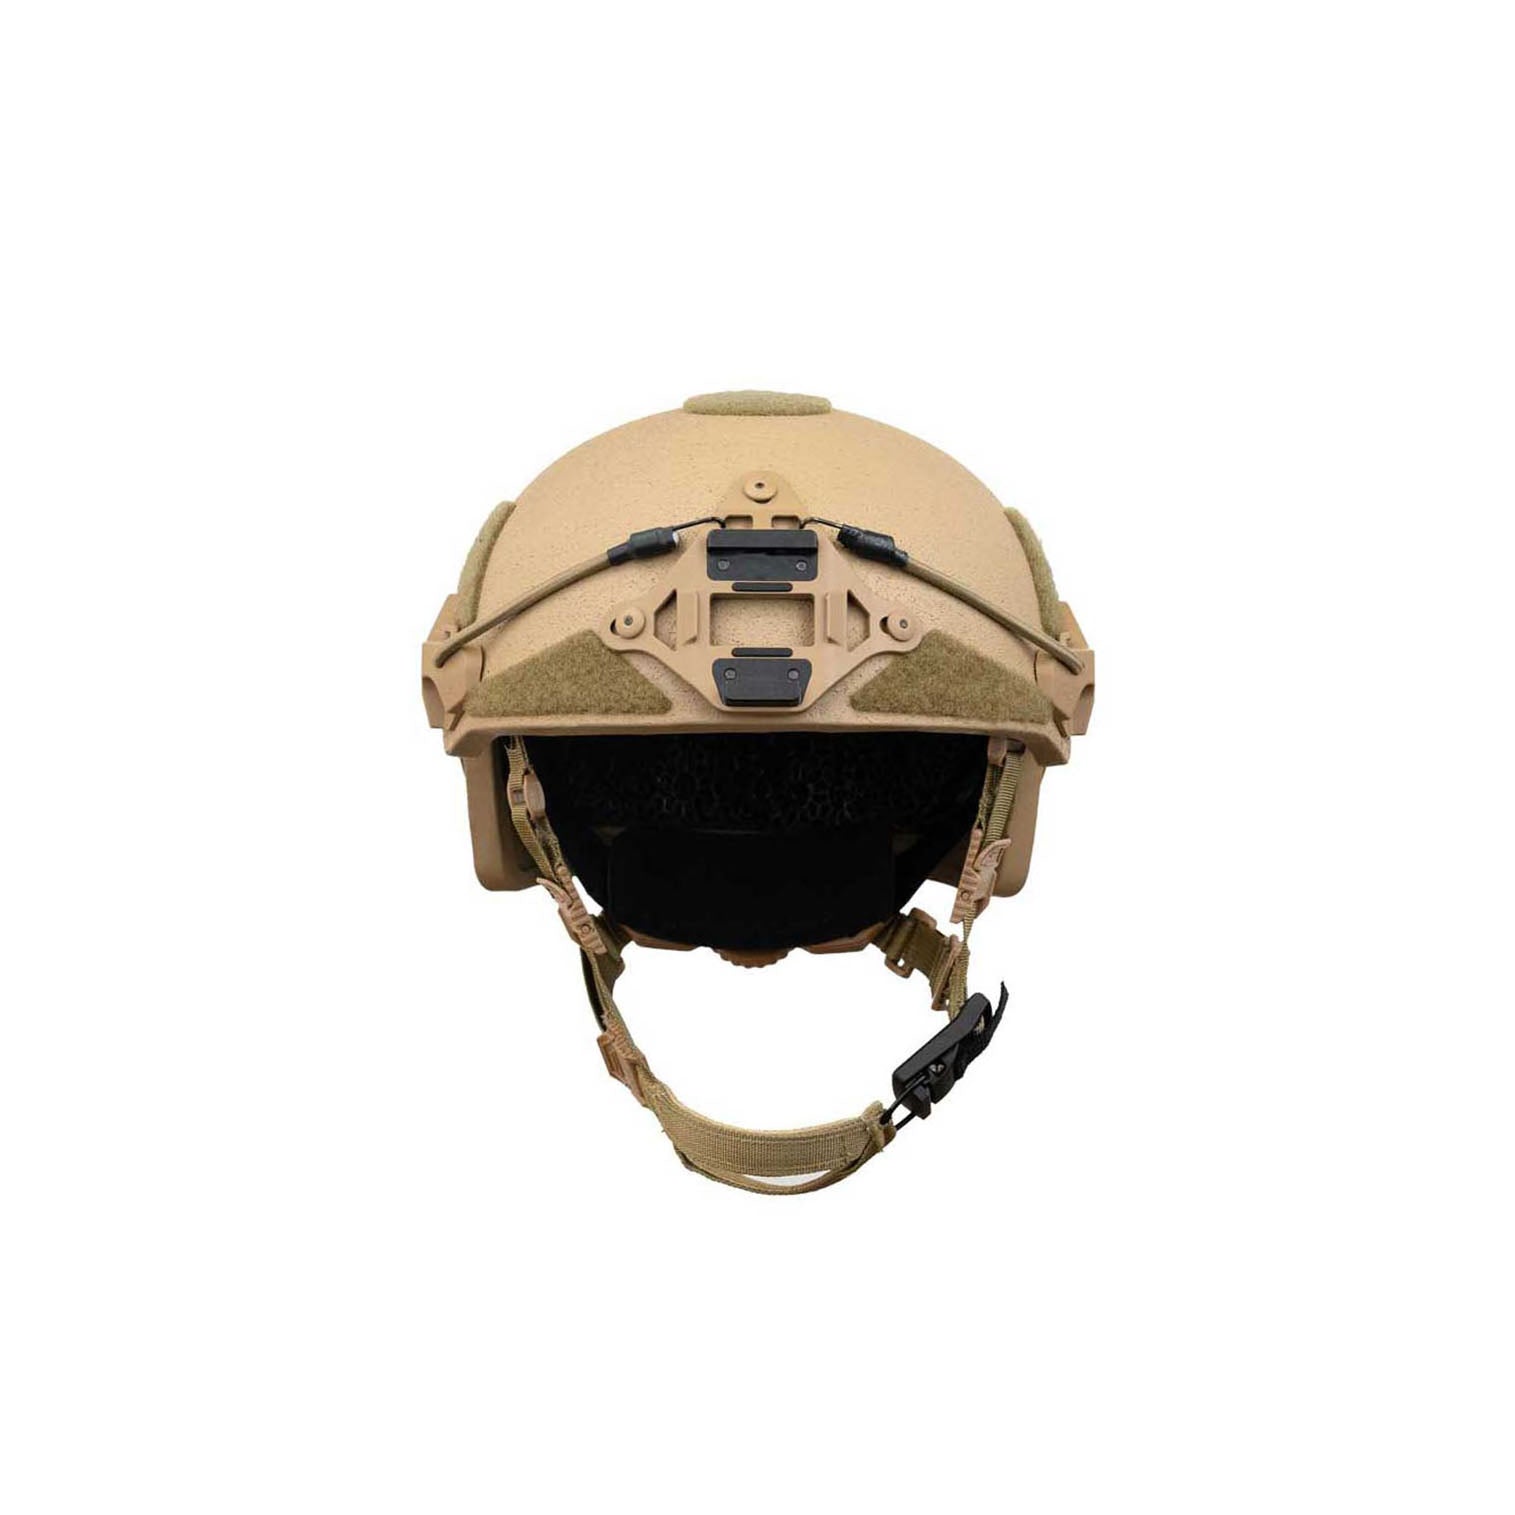 tan Gen 3 ballistic helmet